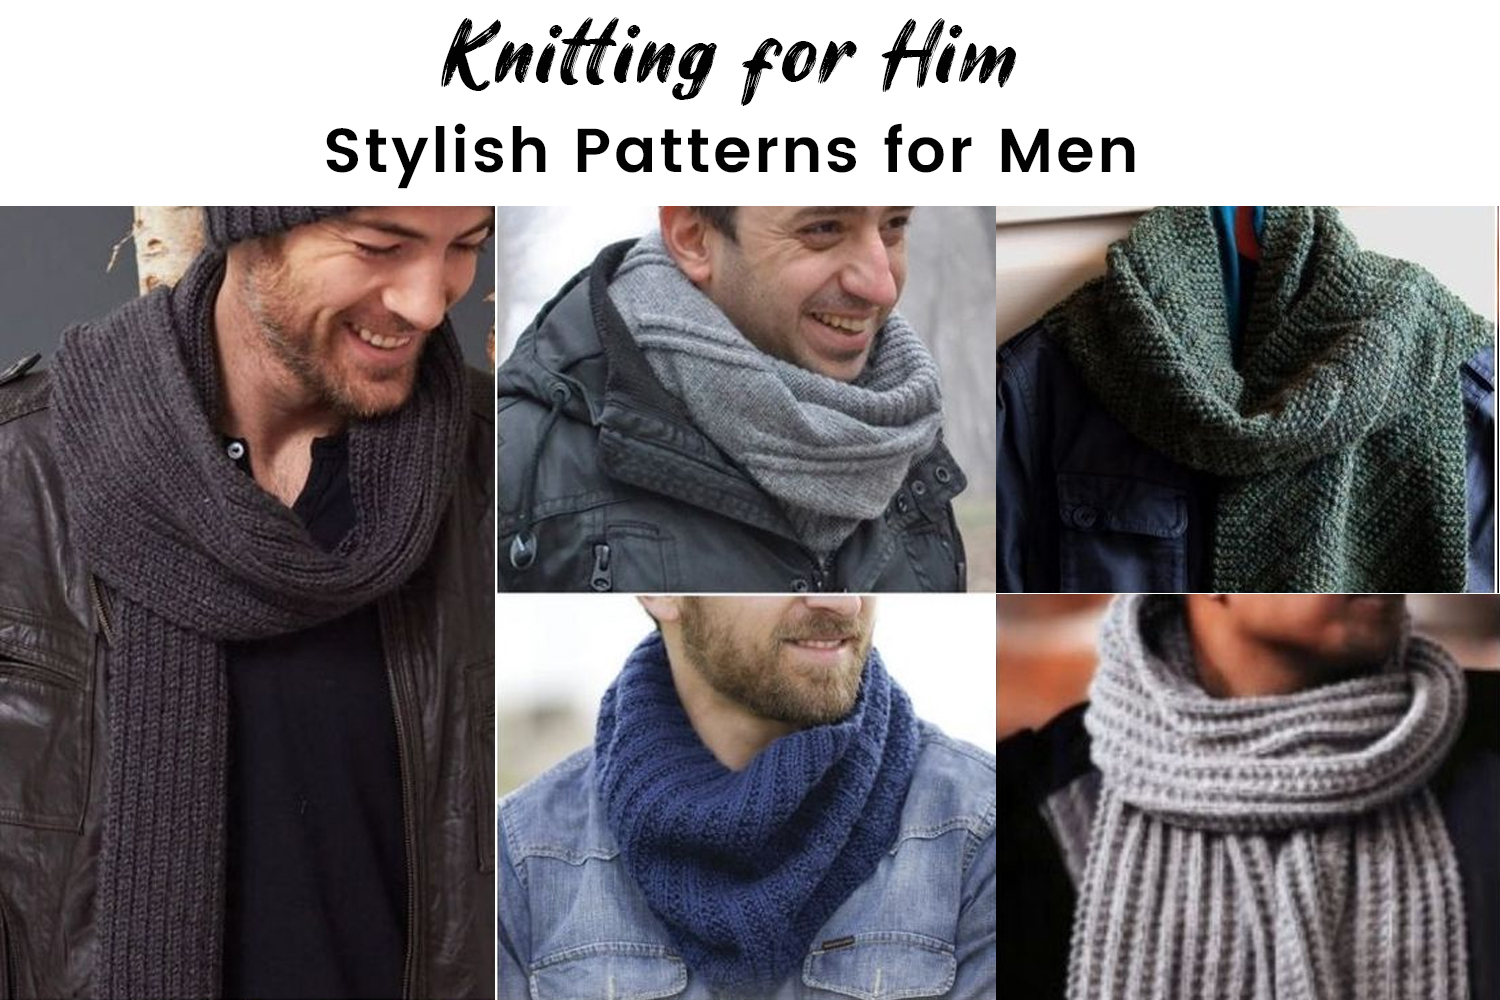 Knitting for Him: Stylish Patterns for Men - The Knitting Crochet